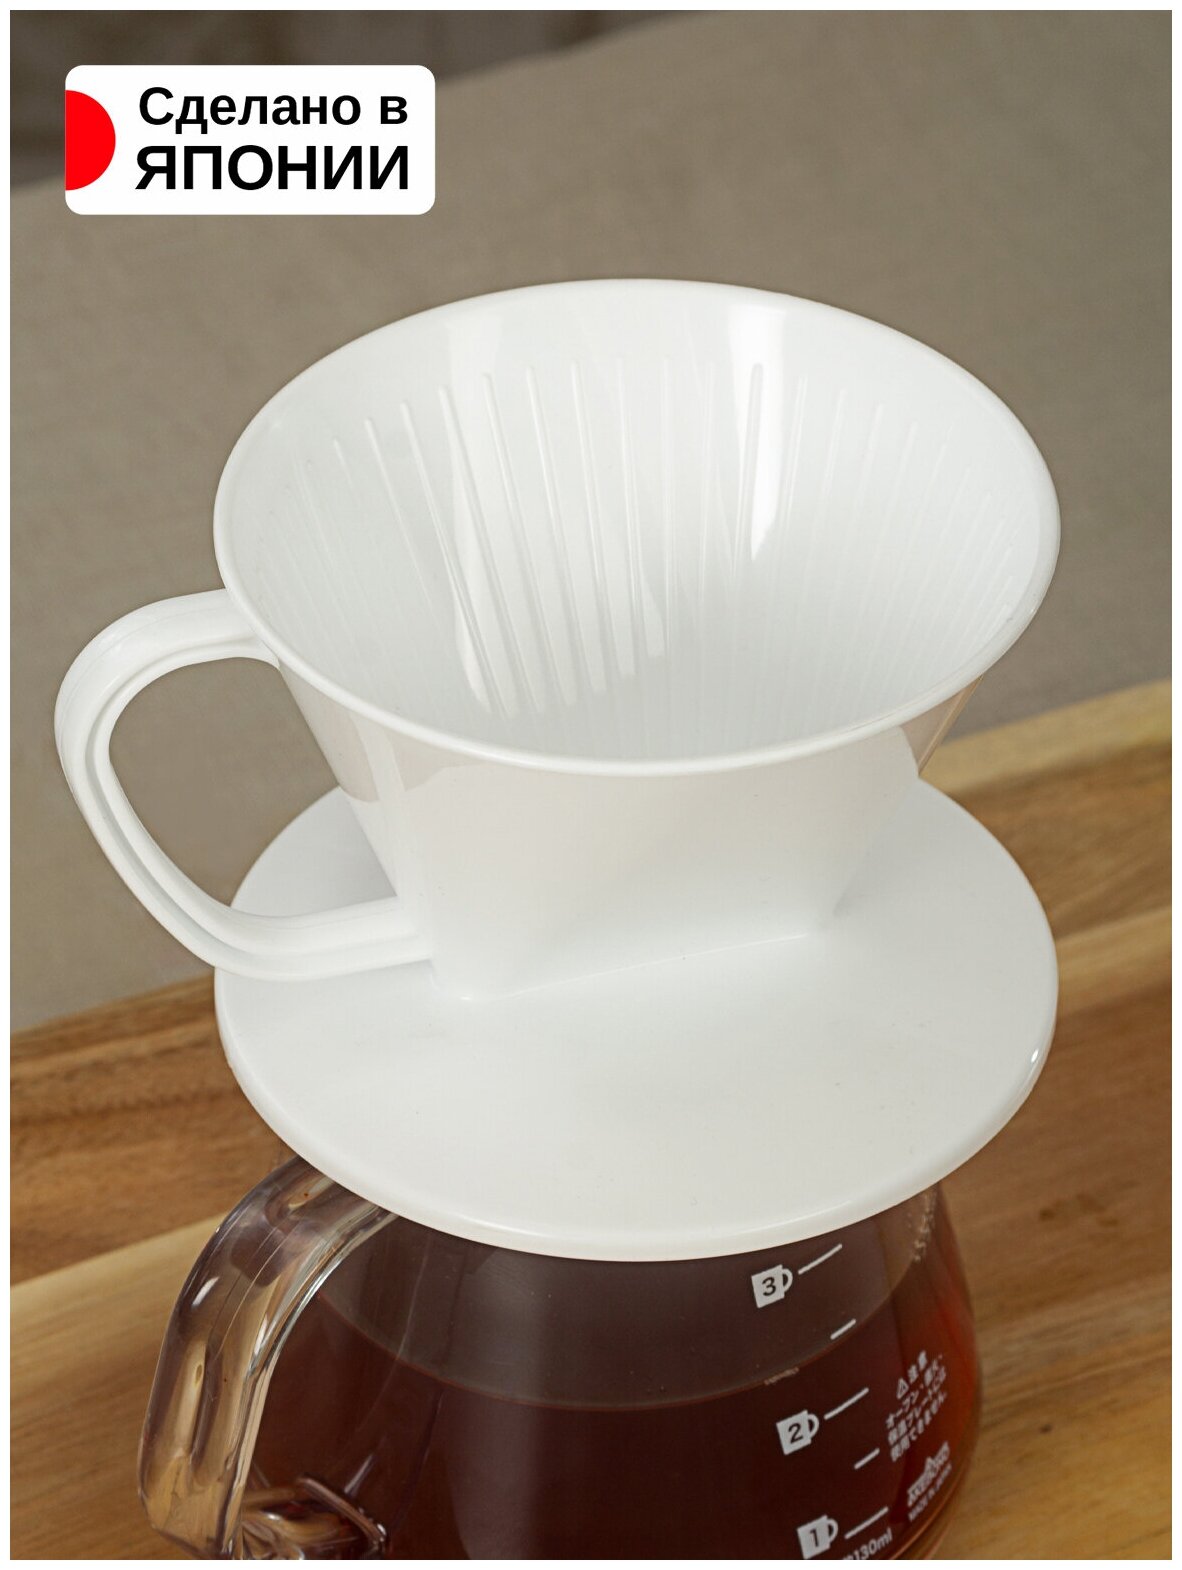 Воронка-дриппер для заваривания кофе методом "Пуровер" 13,6*11,5*8,1 см Nakaya